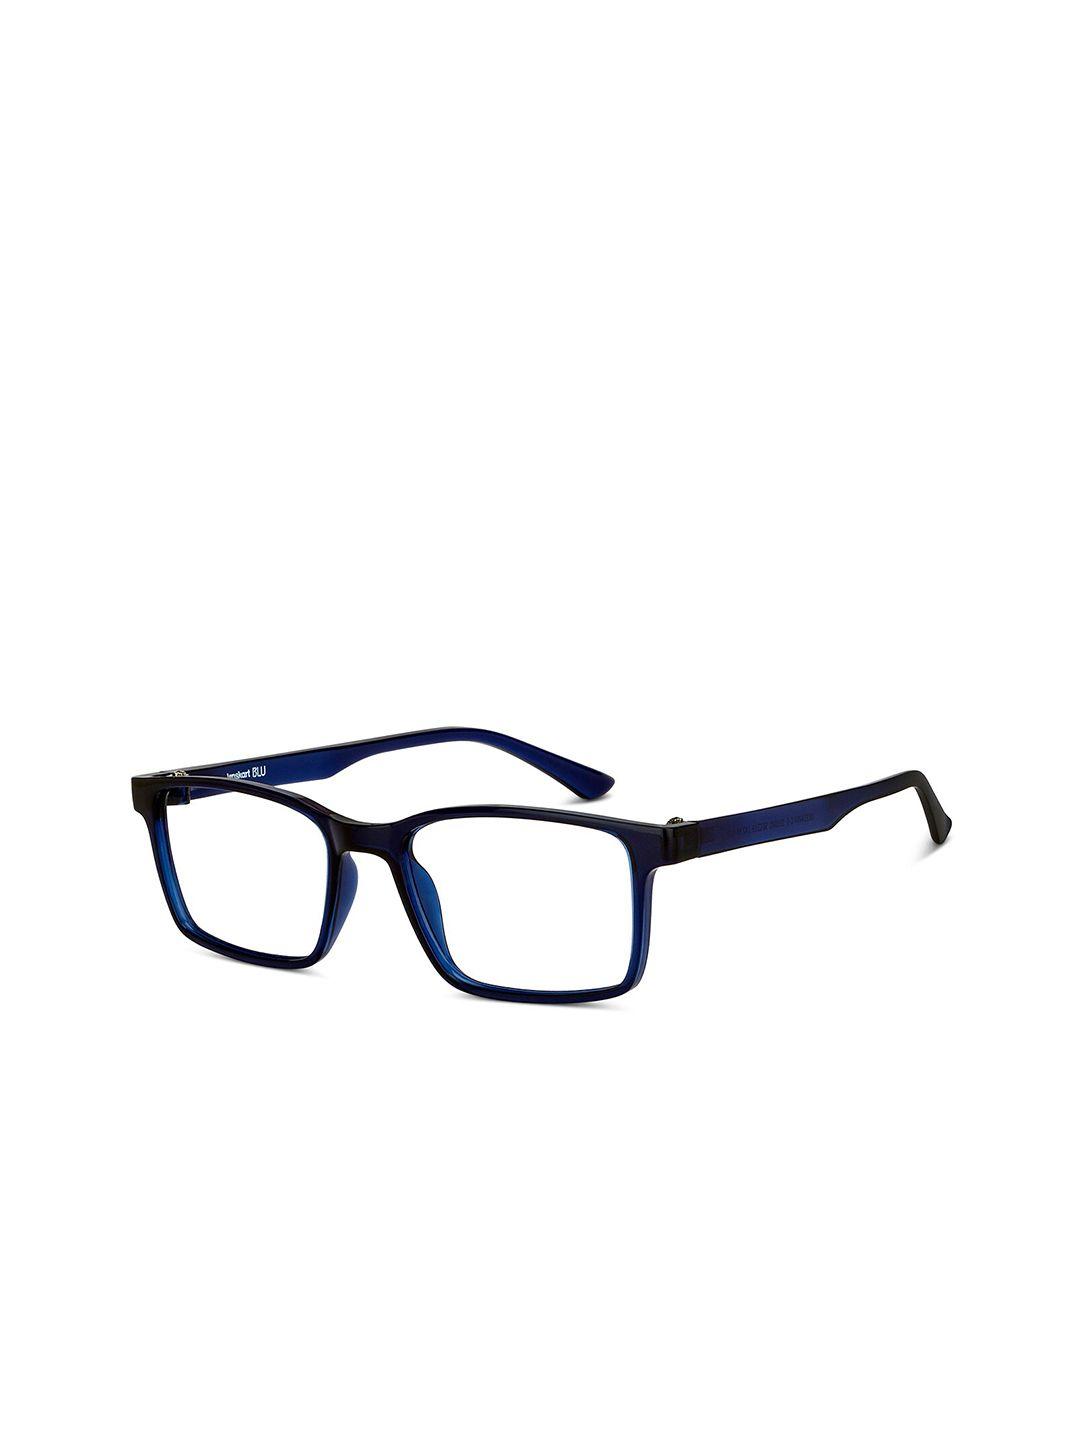 lenskart blu unisex transparent & navy blue full rim rectangle frames